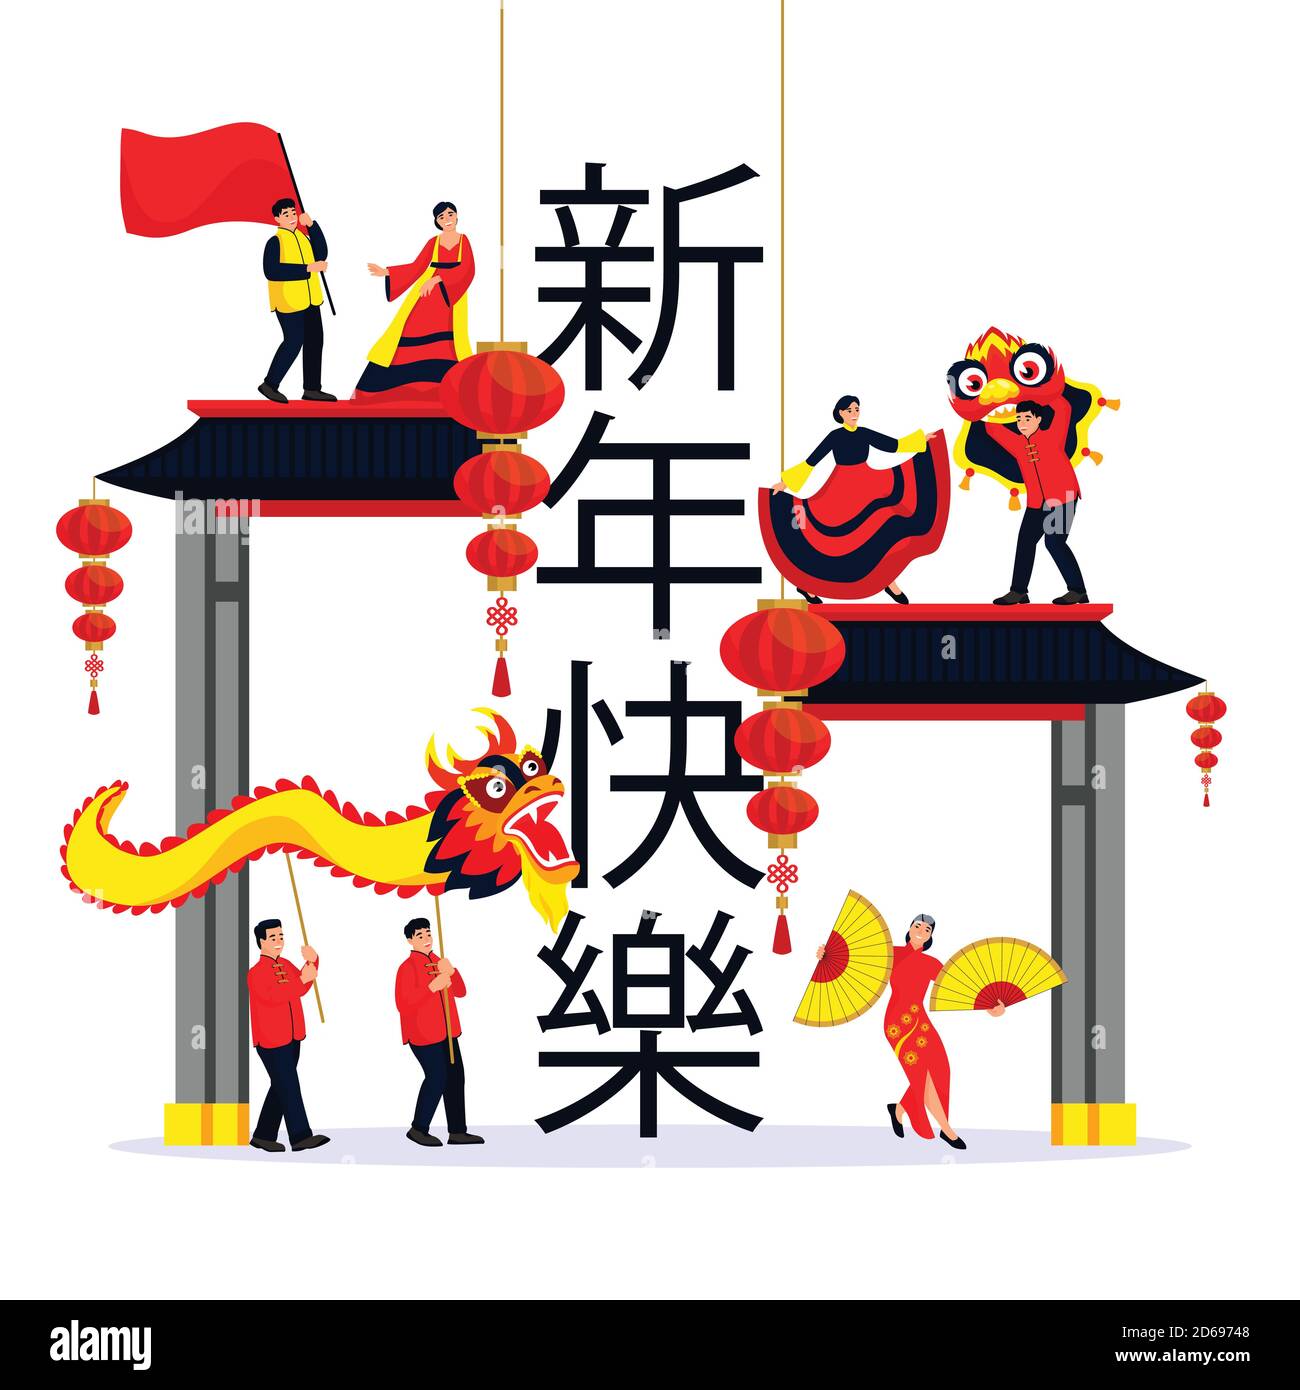 Célébration de la nouvelle année lunaire chinoise. Illustration vectorielle à dessin animé à plat isolée. Danser des gens, des dragon et des lanternes sur des personnages chinois signifie heureux ne Illustration de Vecteur